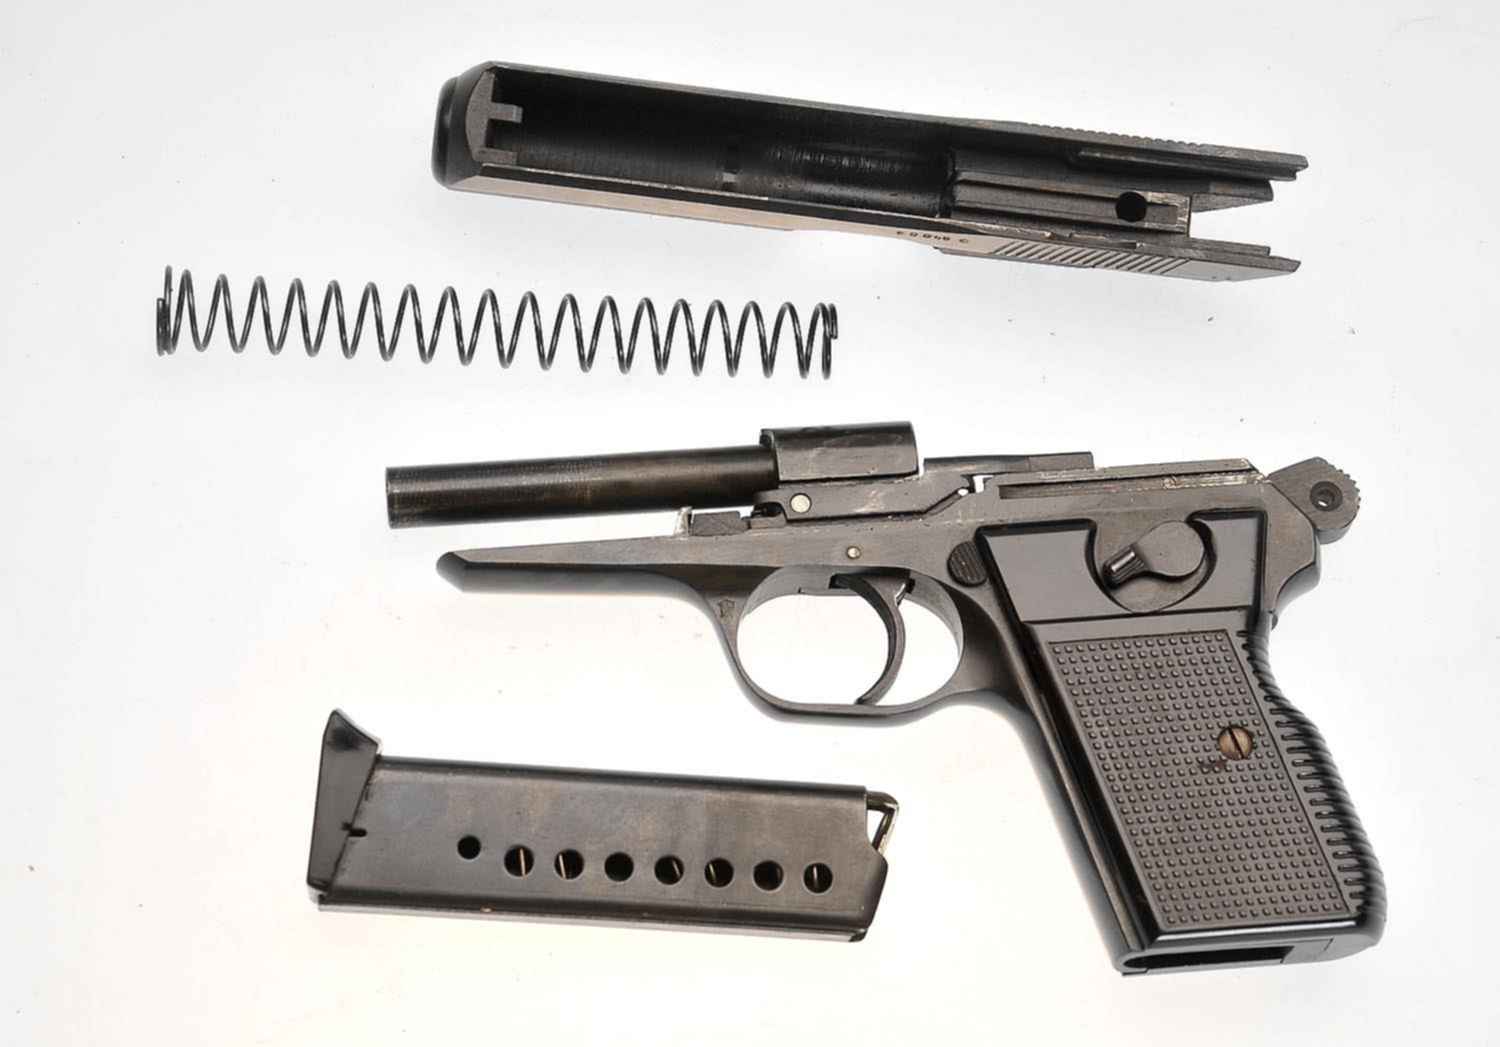 Продам макет чешского пистолета VZOR 70 cal 7.65 макет в отличном состоянии...